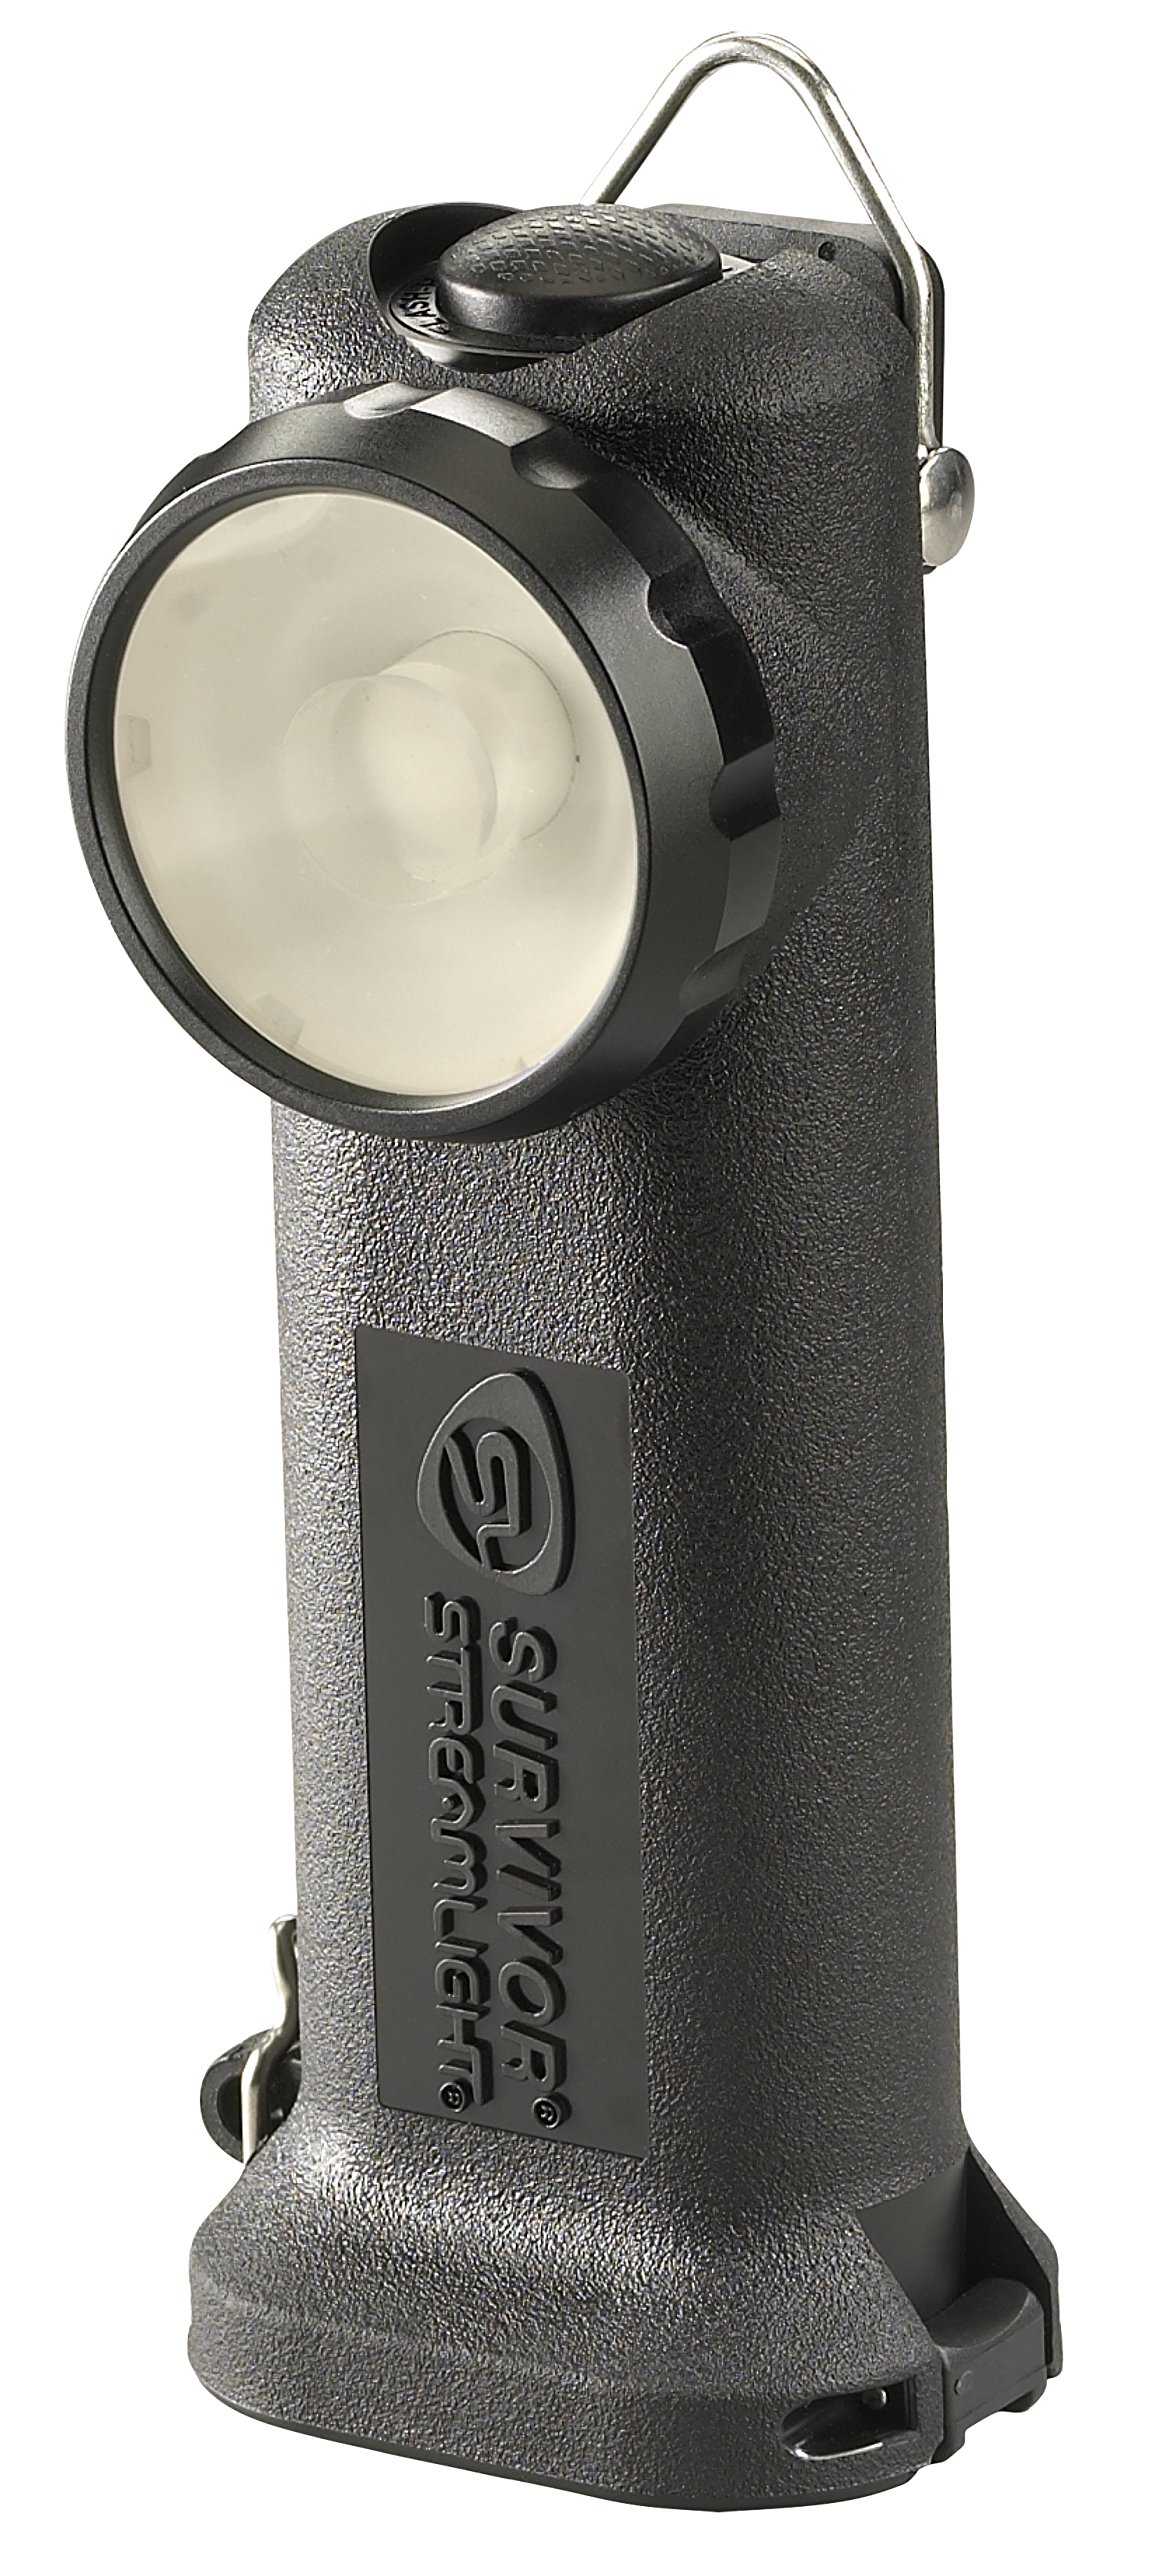 Streamlight サバイバー LED 充電式懐中電灯